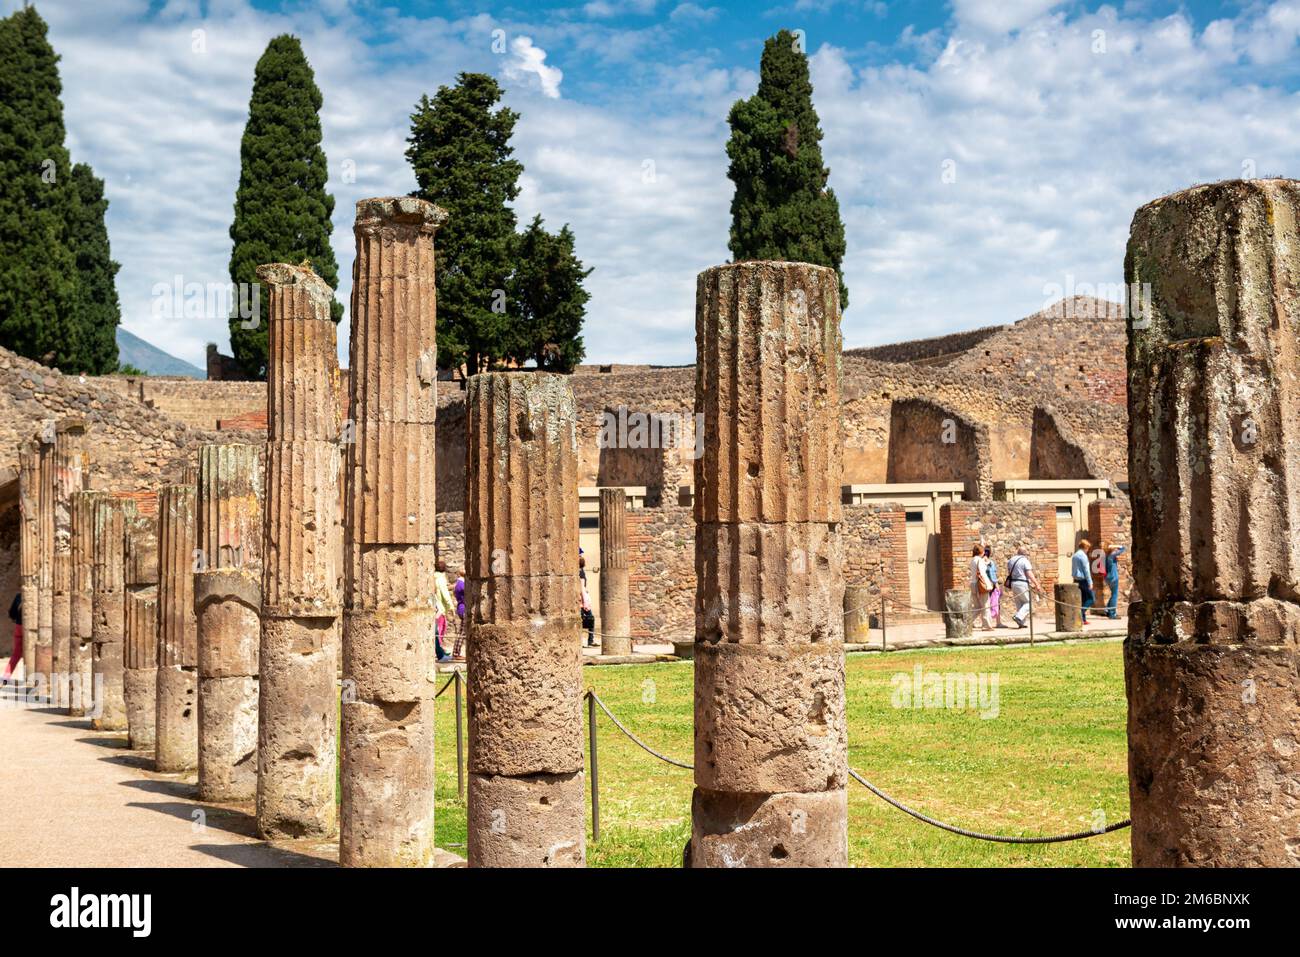 Ruinen von Pompeji in der Nähe von Neapel, Italien. Pompeji ist eine antike römische Stadt, ein Weltdenkmal. Landschaft mit Säulen oder Quadriporticus der Kaserne der Gladiatoren. Thema von Stockfoto